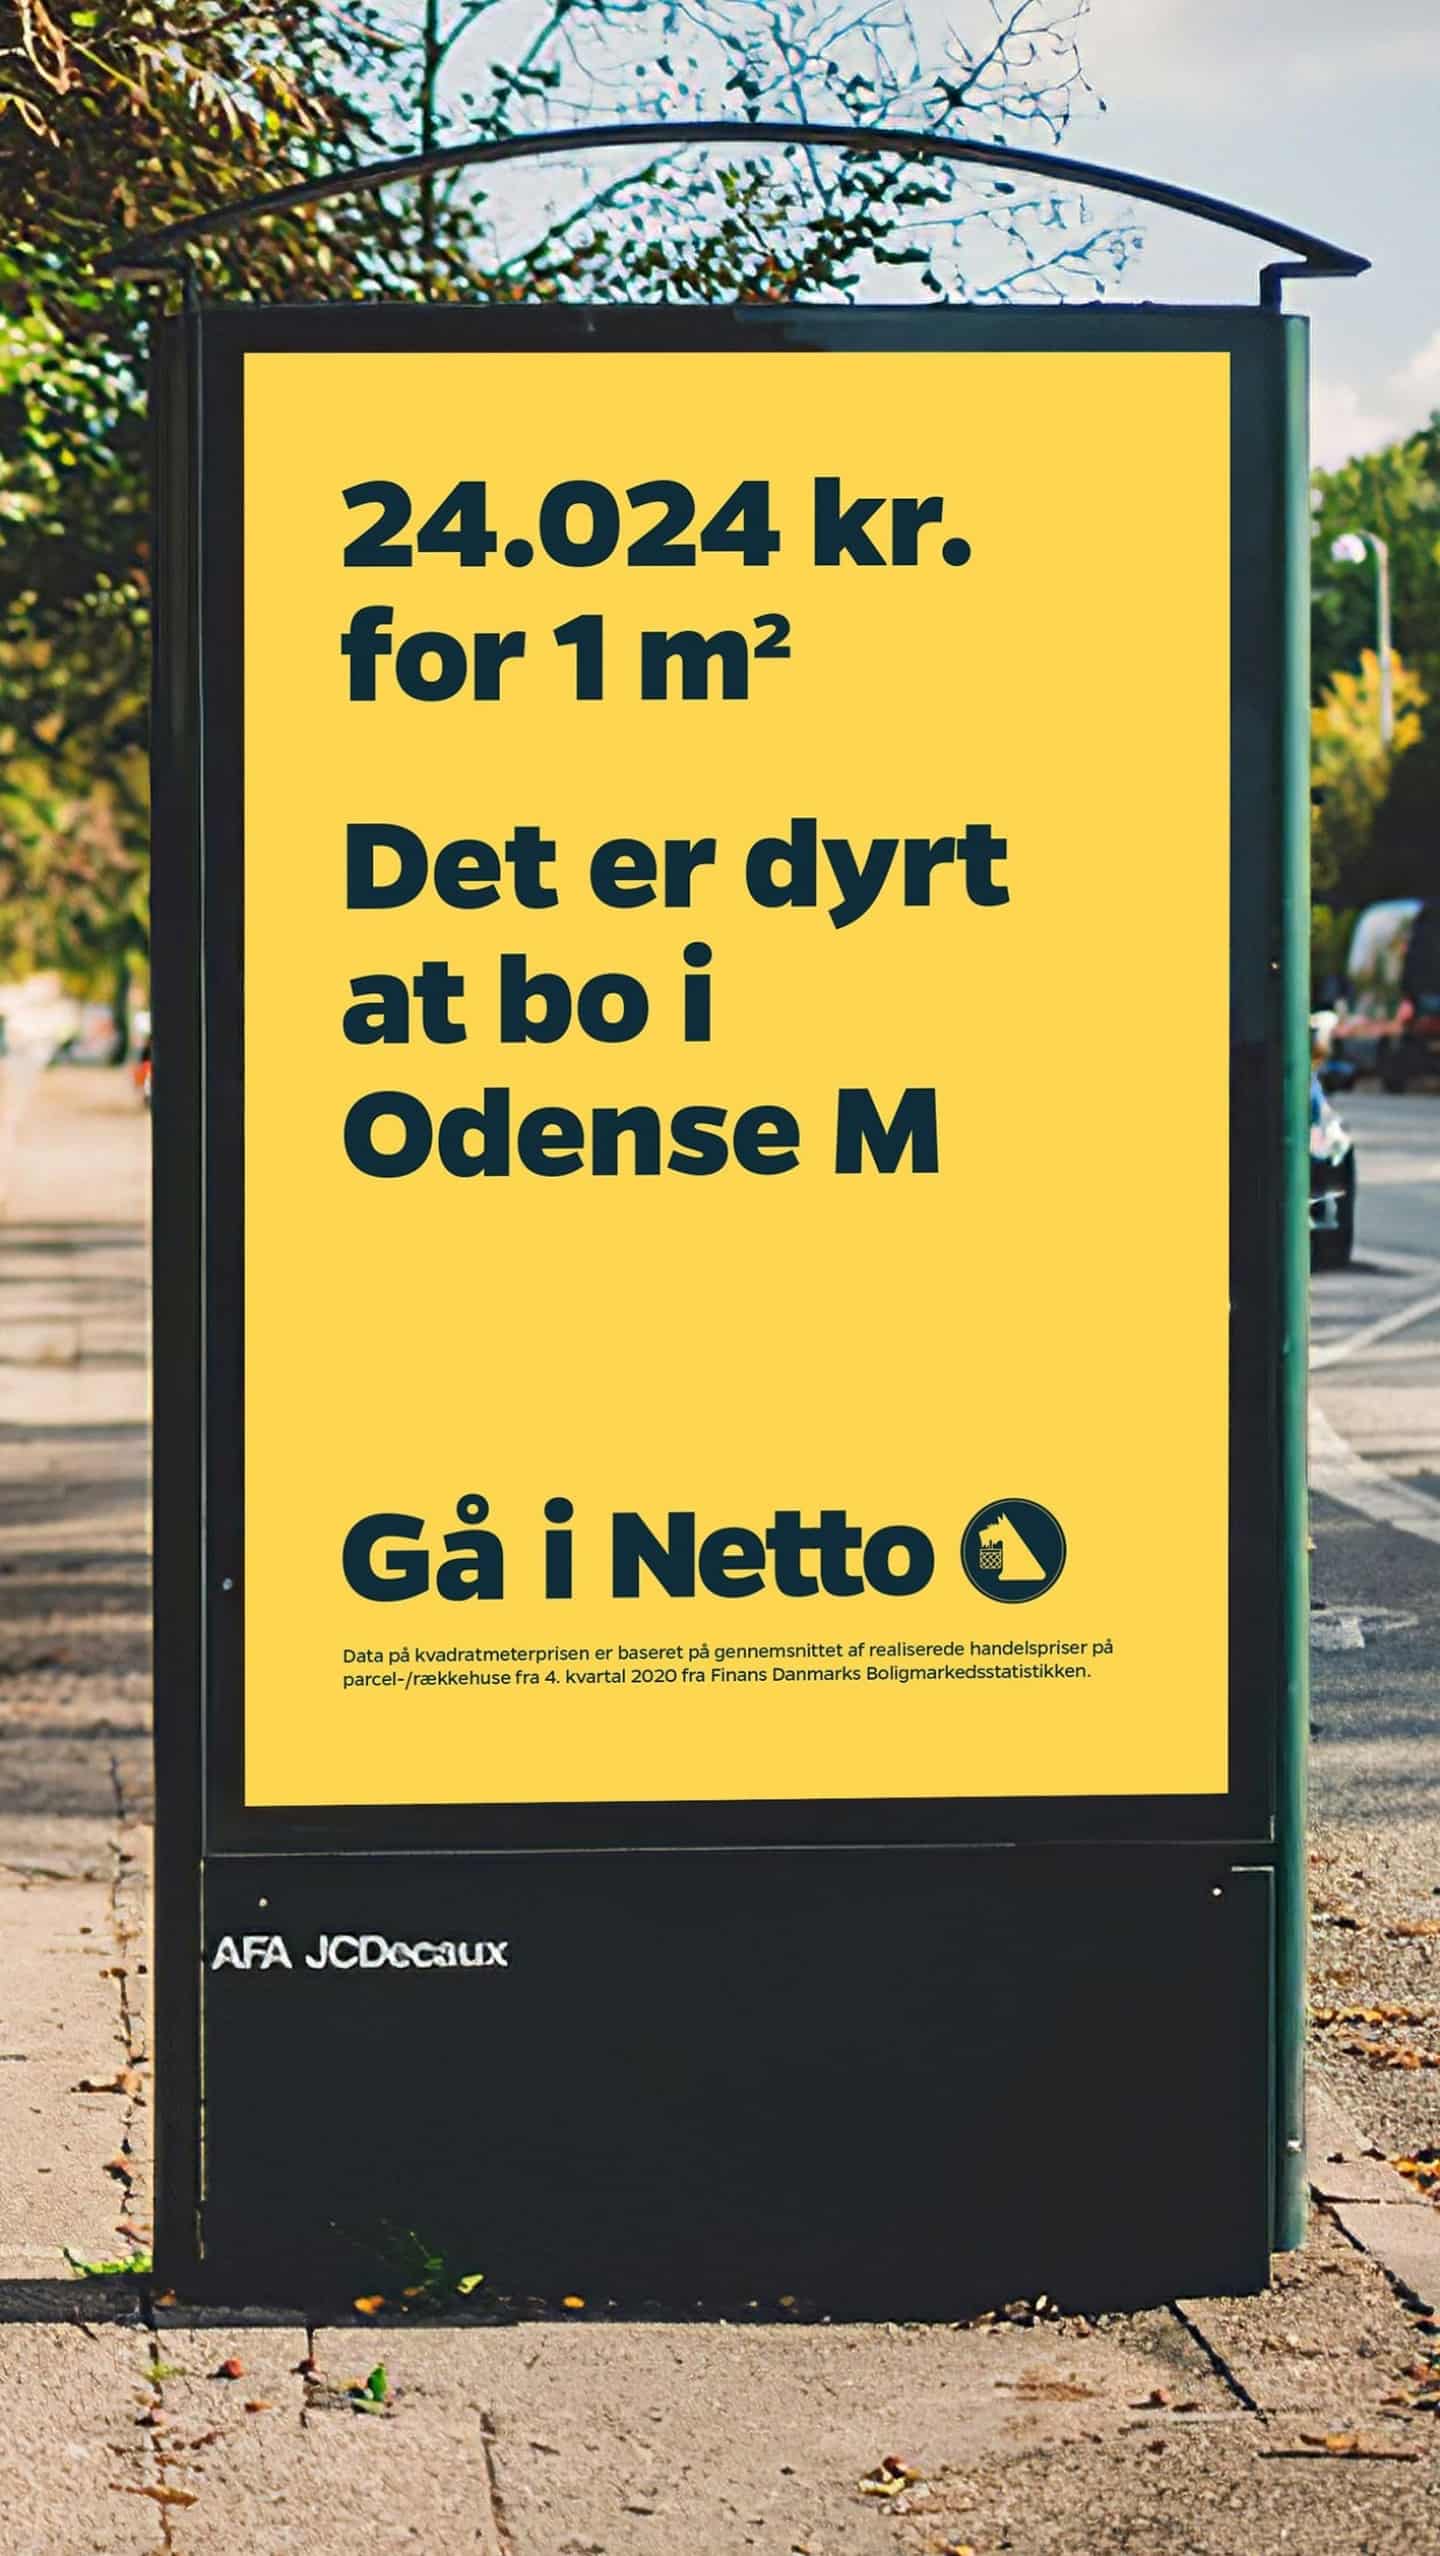 Kampagnehumor: Netto spiller på Odense Ms høje boligpriser